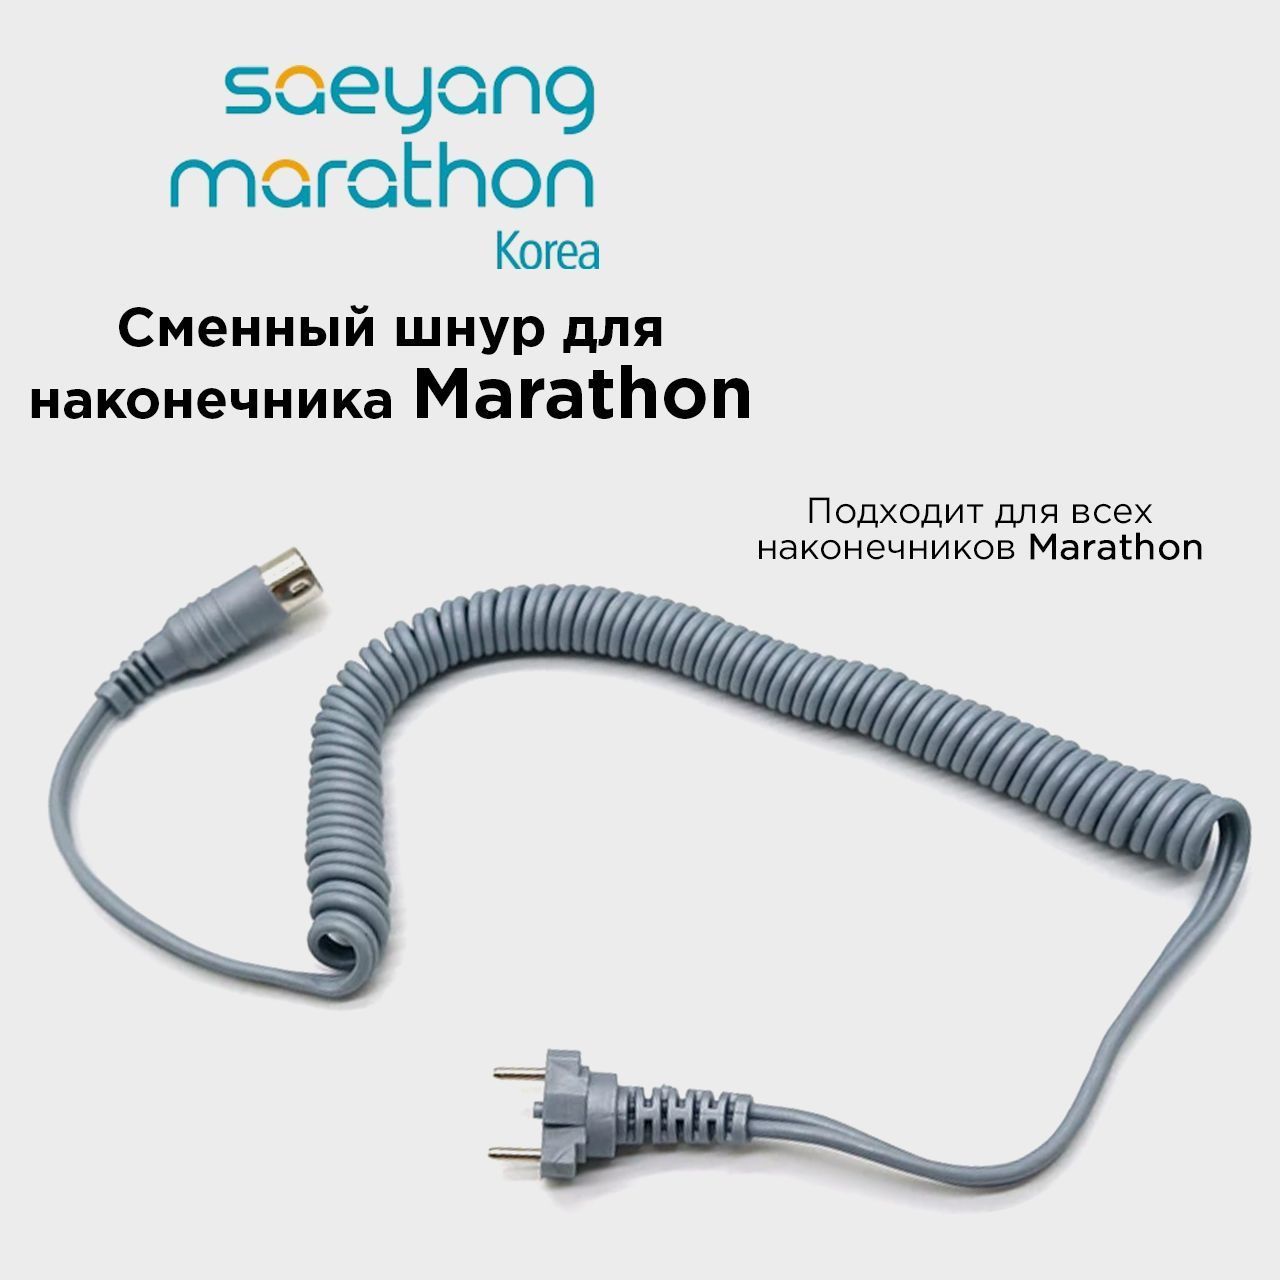 Провод для микромотора Marathon шнур для ручки наконечника Маратон Серый шнур жердочка ferplast большая 75 см